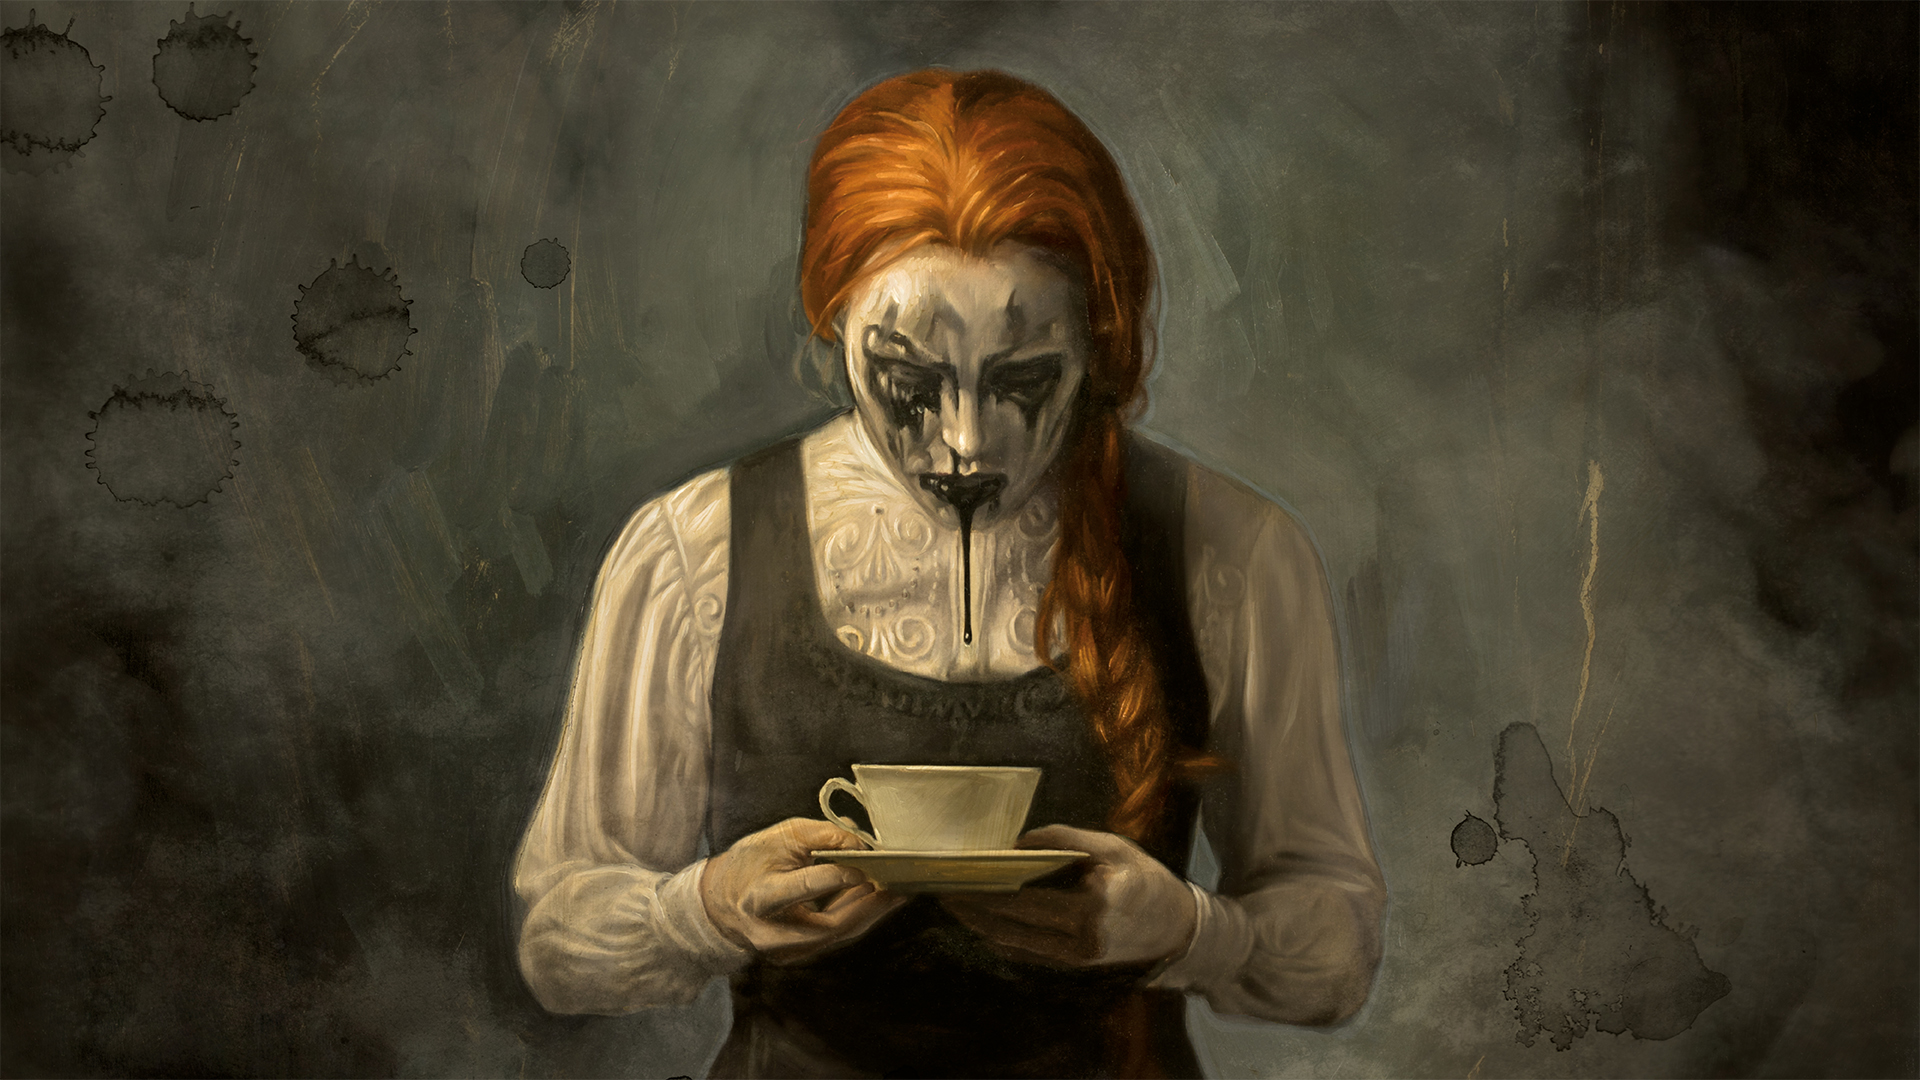 Vitblek kvinna med orange hår och svart smink utsmetat i hela ansiktet som läcker svart sörja ur munnen ner i en kopp hon håller i händerna. Oljemålning. 